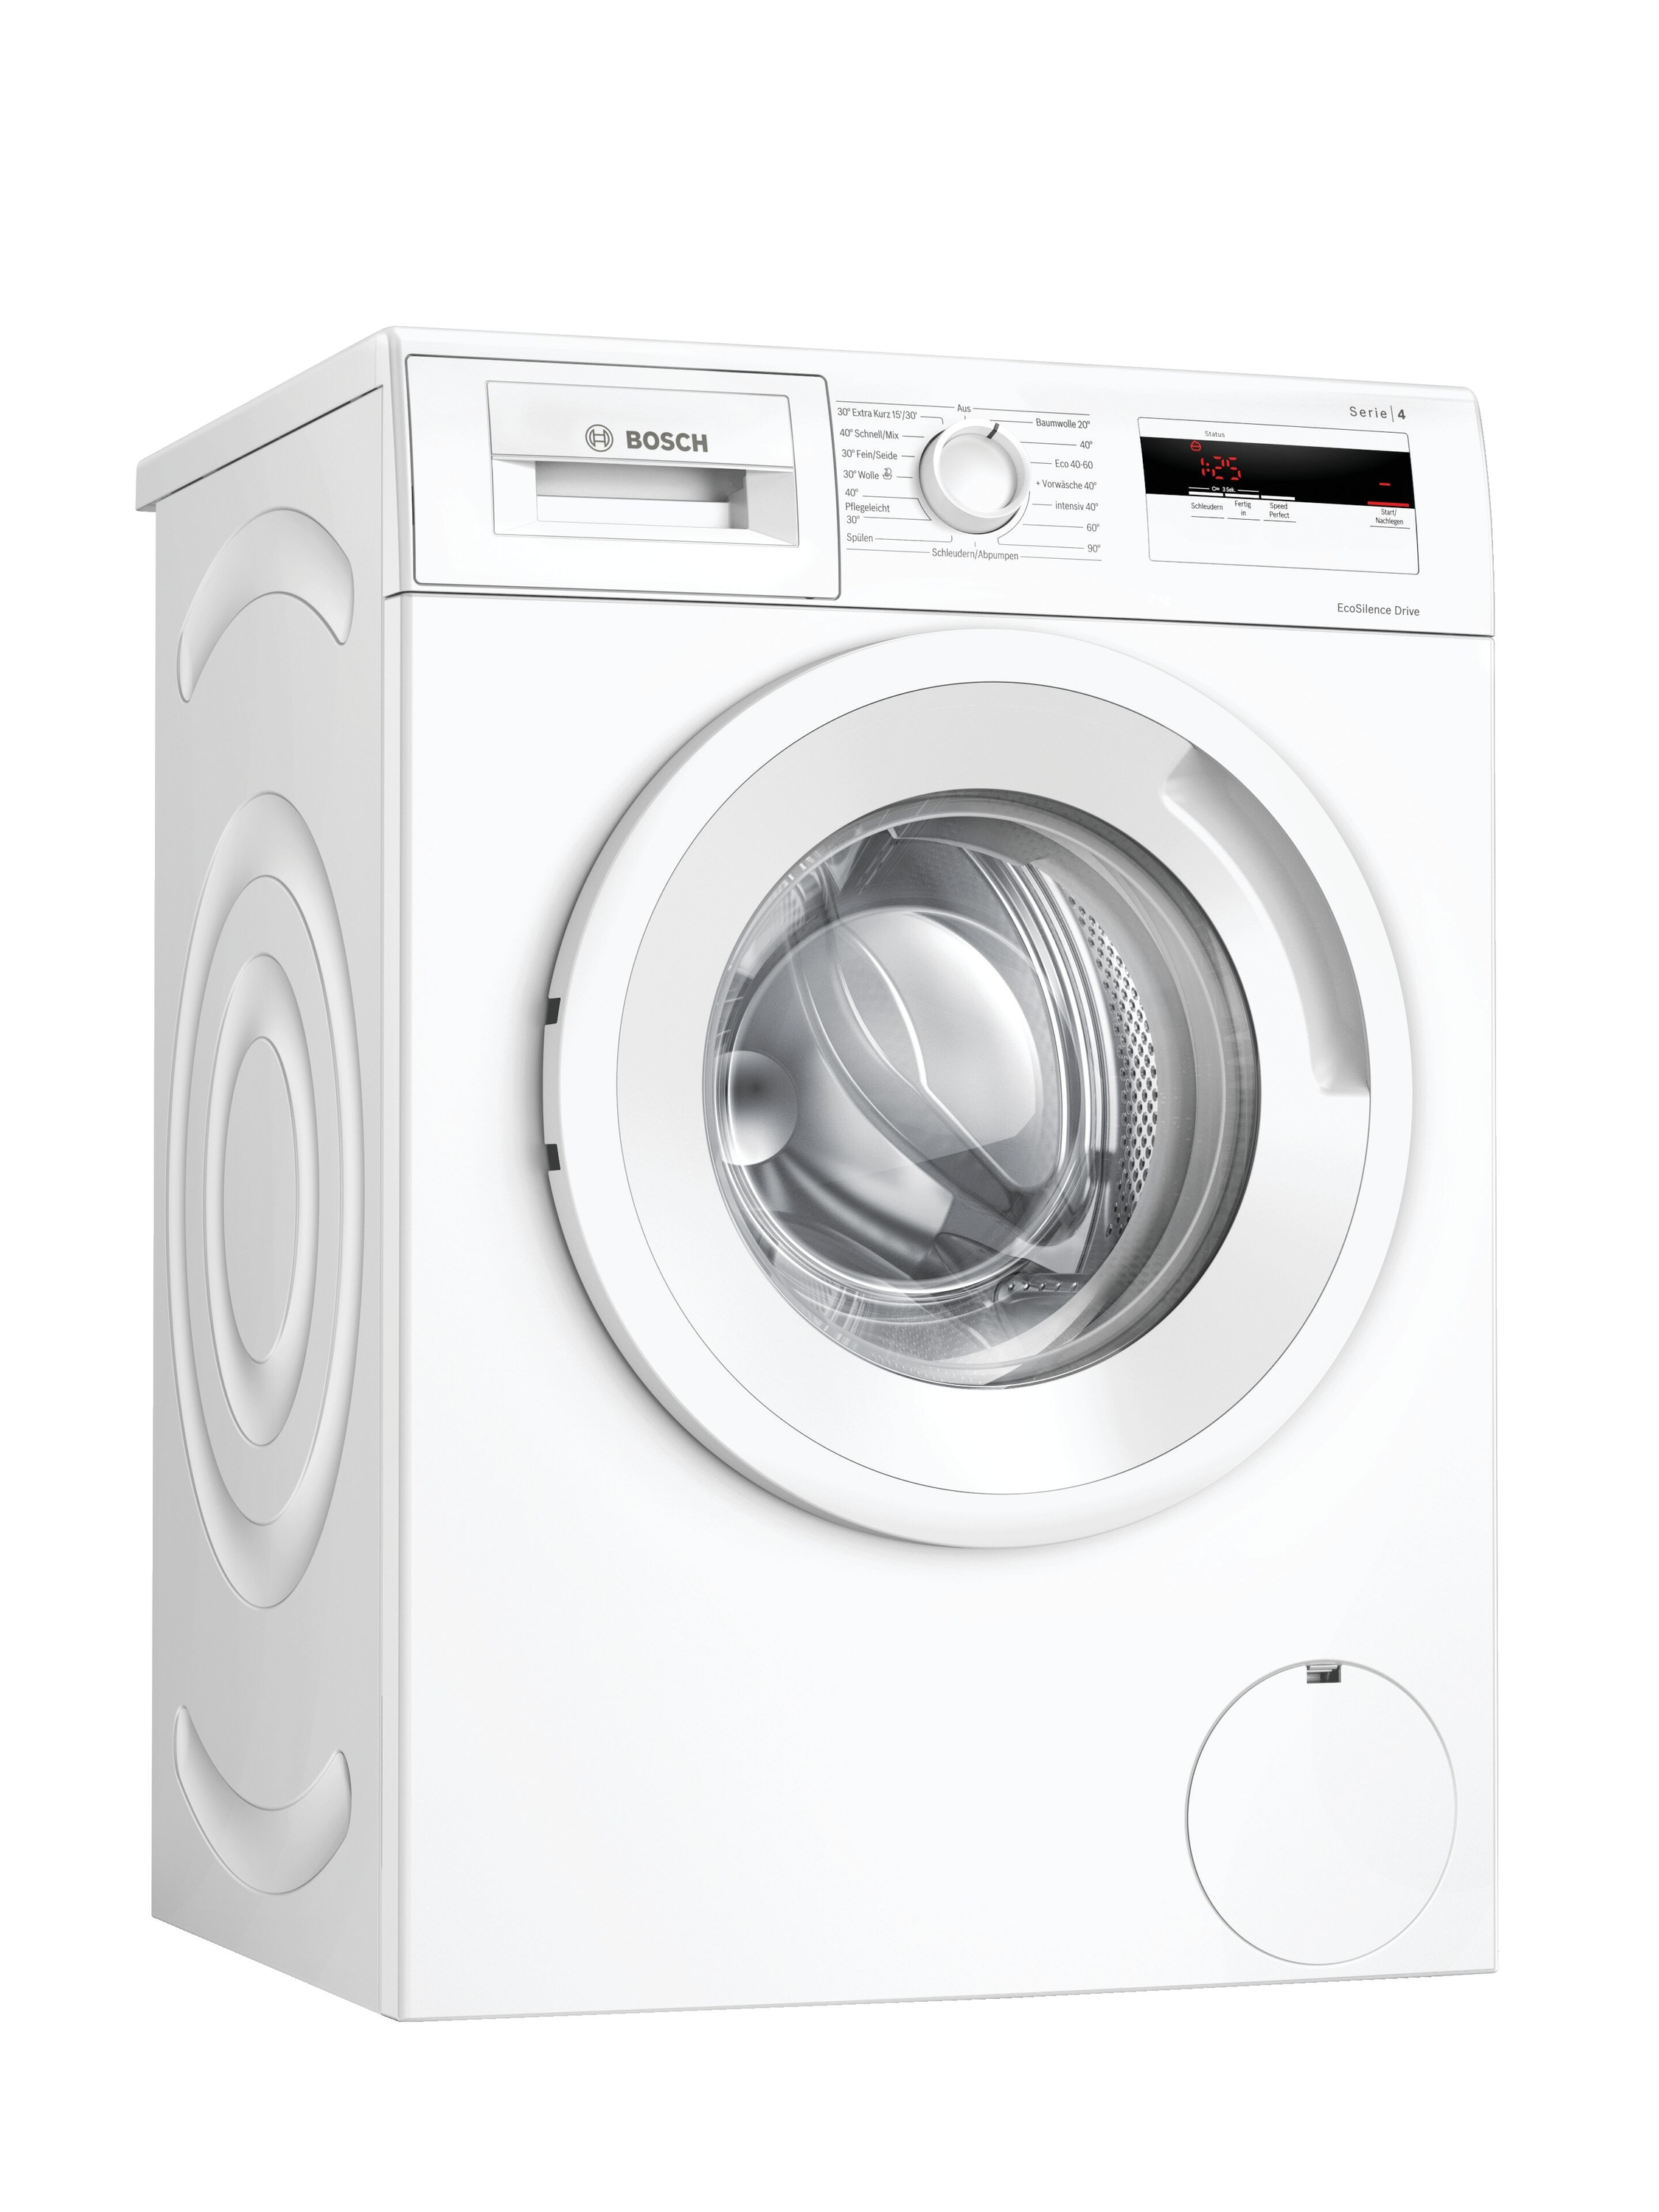 (7 Waschmaschine Serie D) BOSCH 1400 4 kg, WAN280A2 U/Min.,